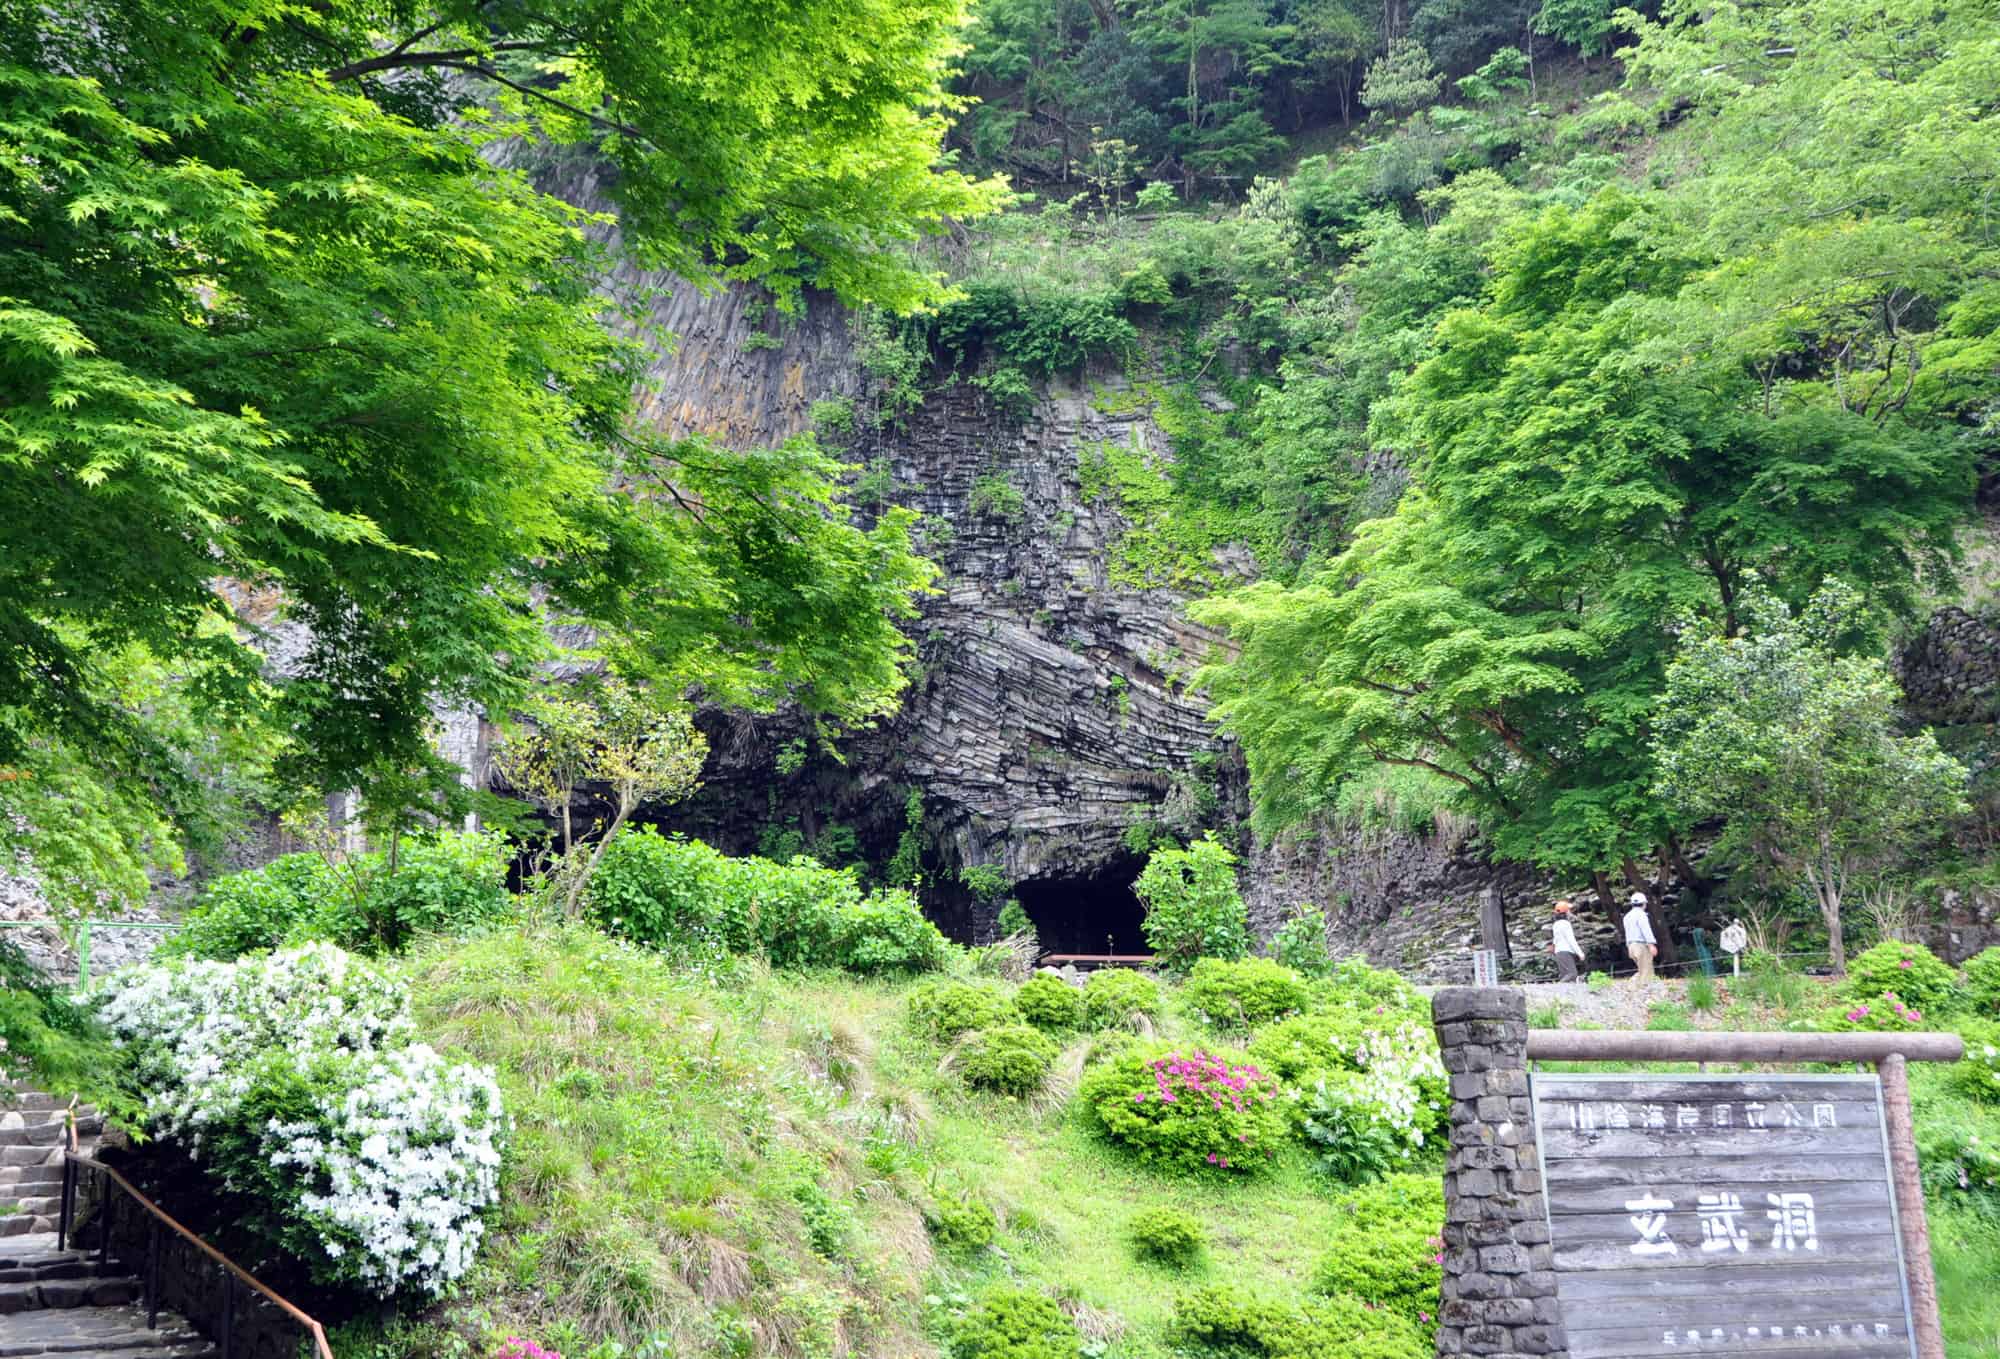 ถ้ำเก็นบุโด (Genbudo Cave) ก็สามารถปั่นจักรยานเลียบแม่น้ำ Maruyama River ไปได้